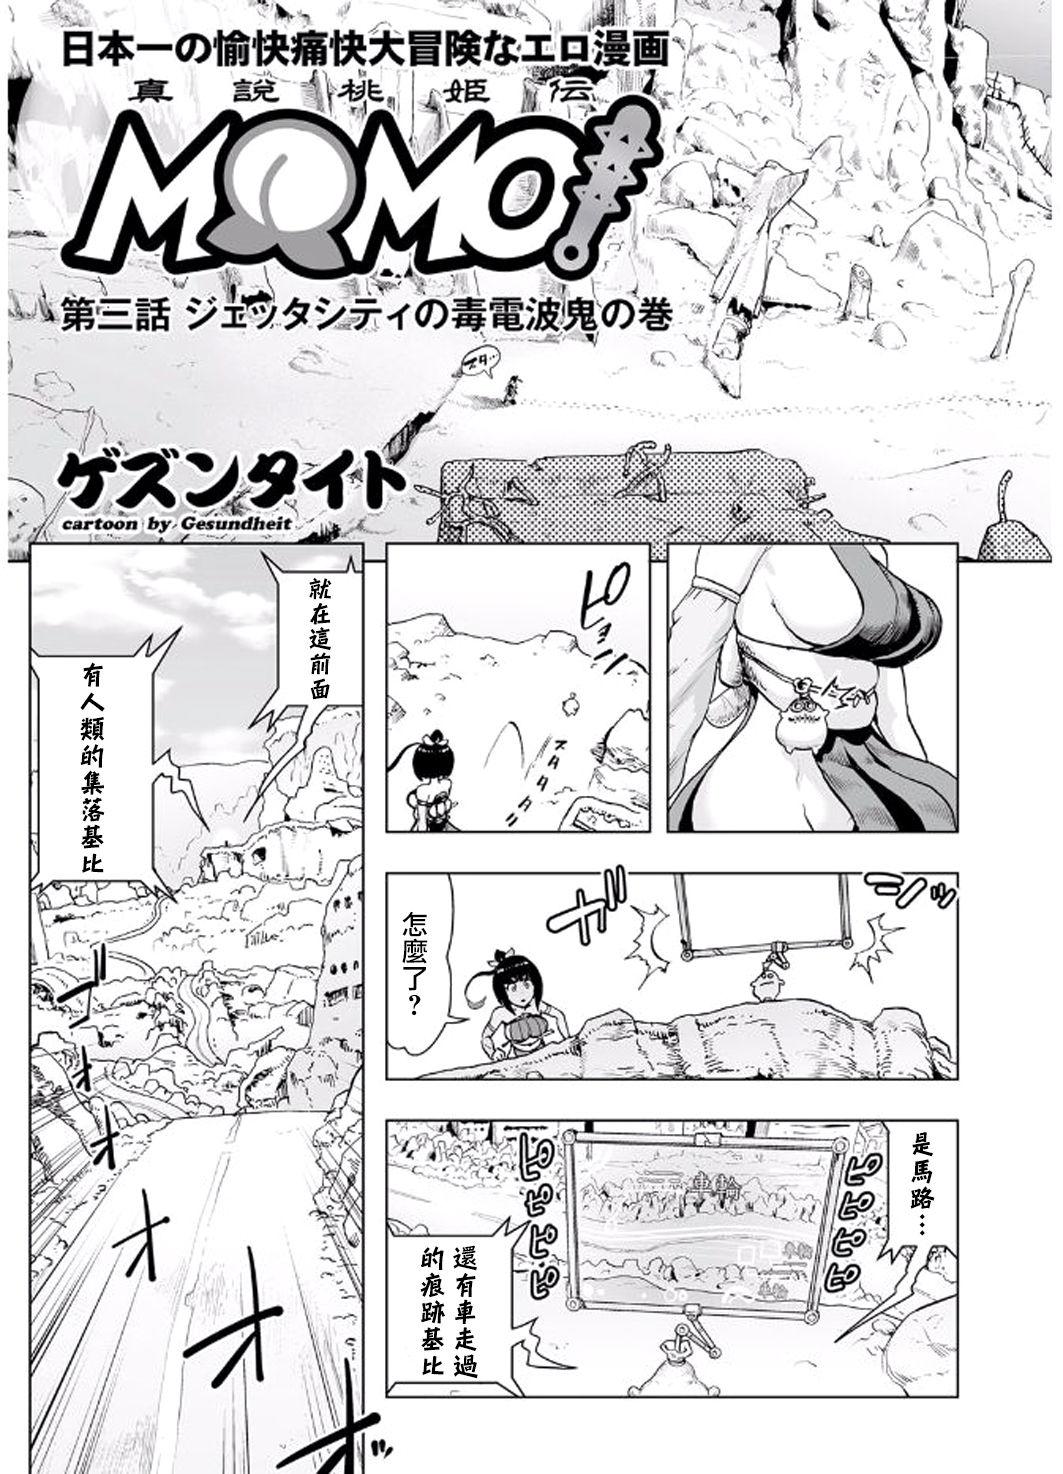 Cavala MOMO! Daisanwa Jetta City no Dokudenpa Oni no Maki Bangkok - Page 4